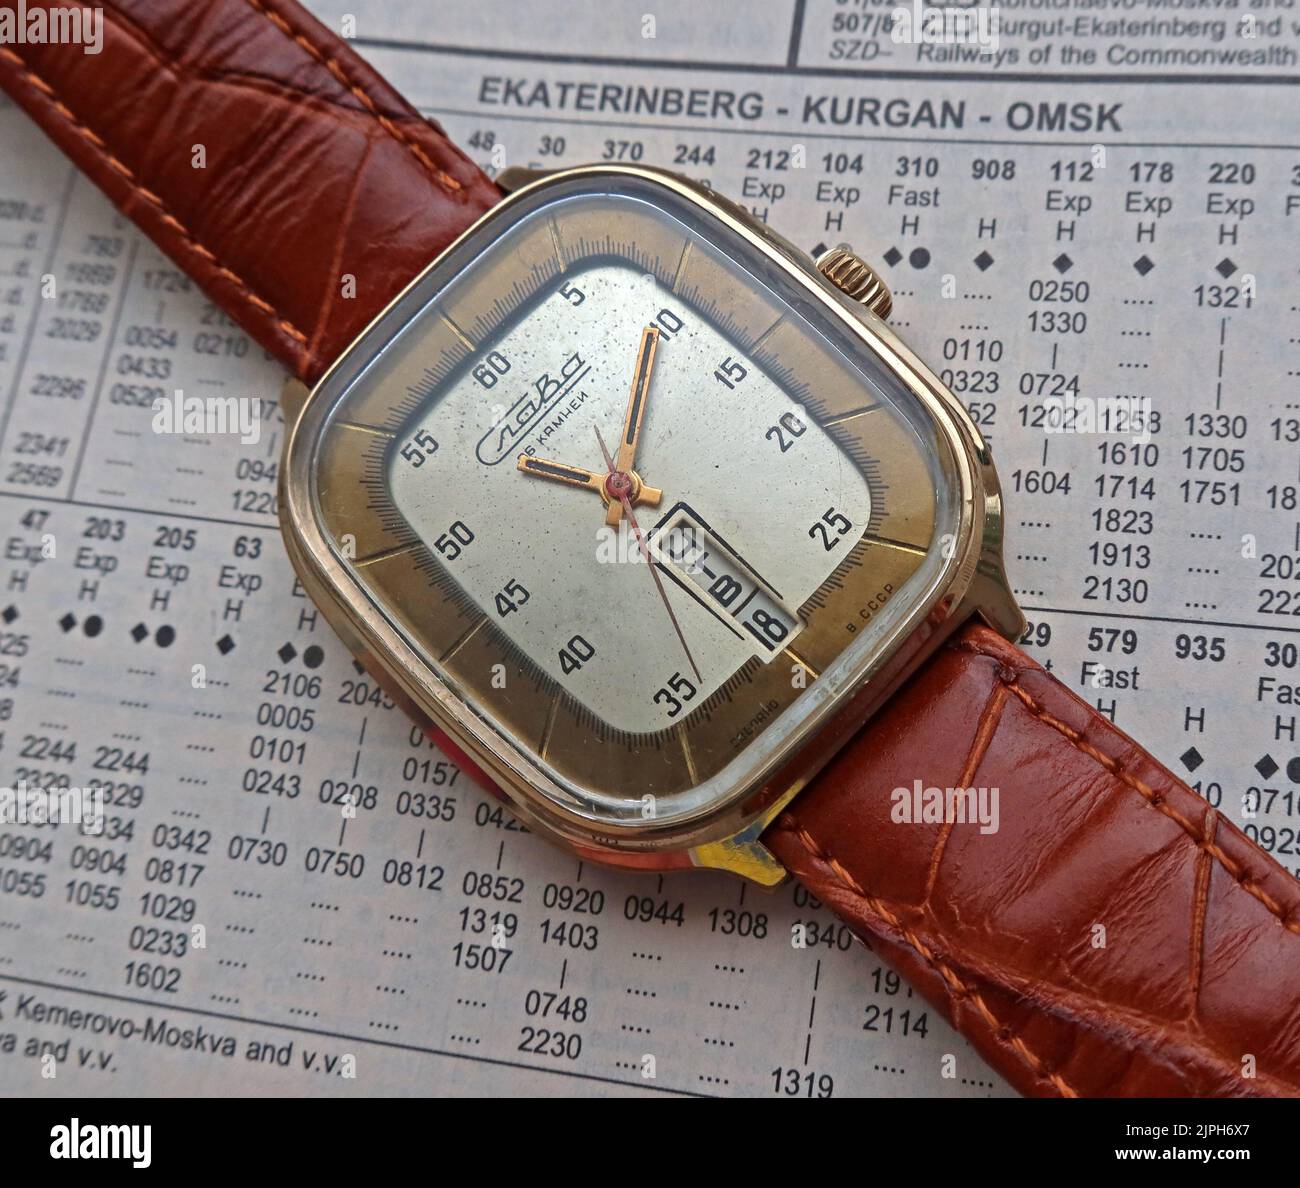 Slava frigidaire Watch - produit de la Russie soviétique Moscou deuxième veille usine 1975, avec jour/date en russe Banque D'Images